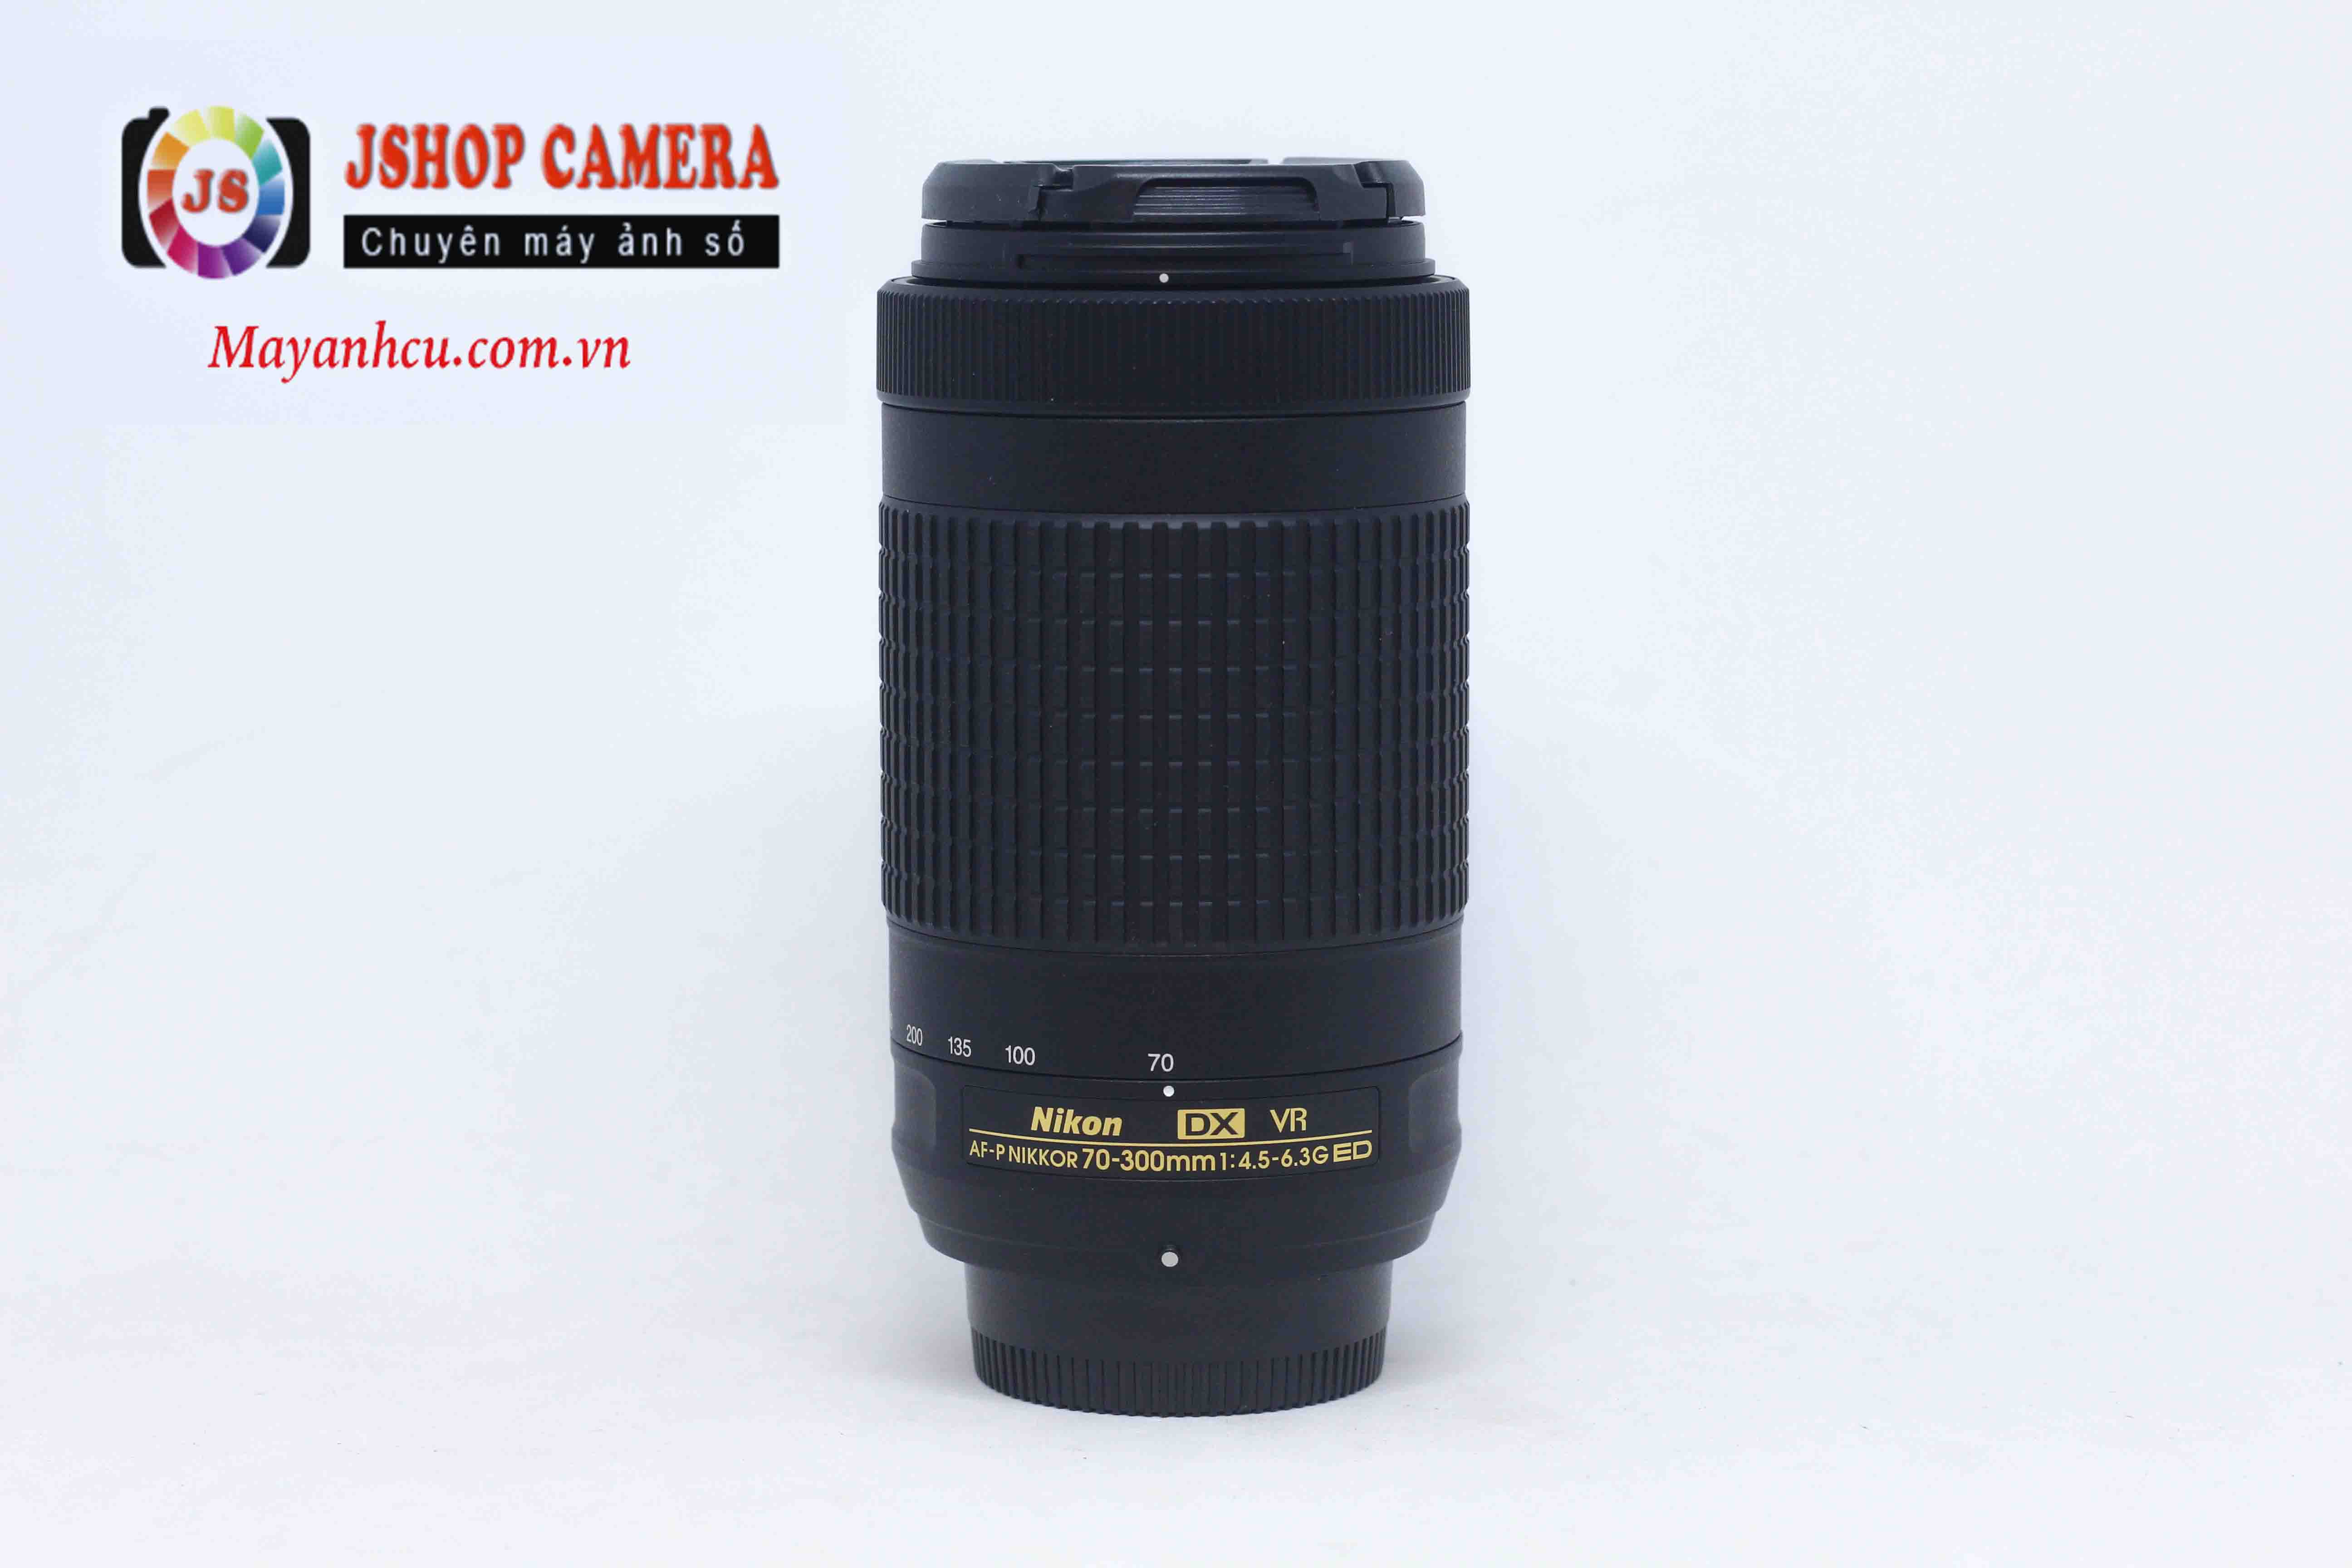 Ống kính Nikon 70-300mm P F/4.5-6.3G DX VR P